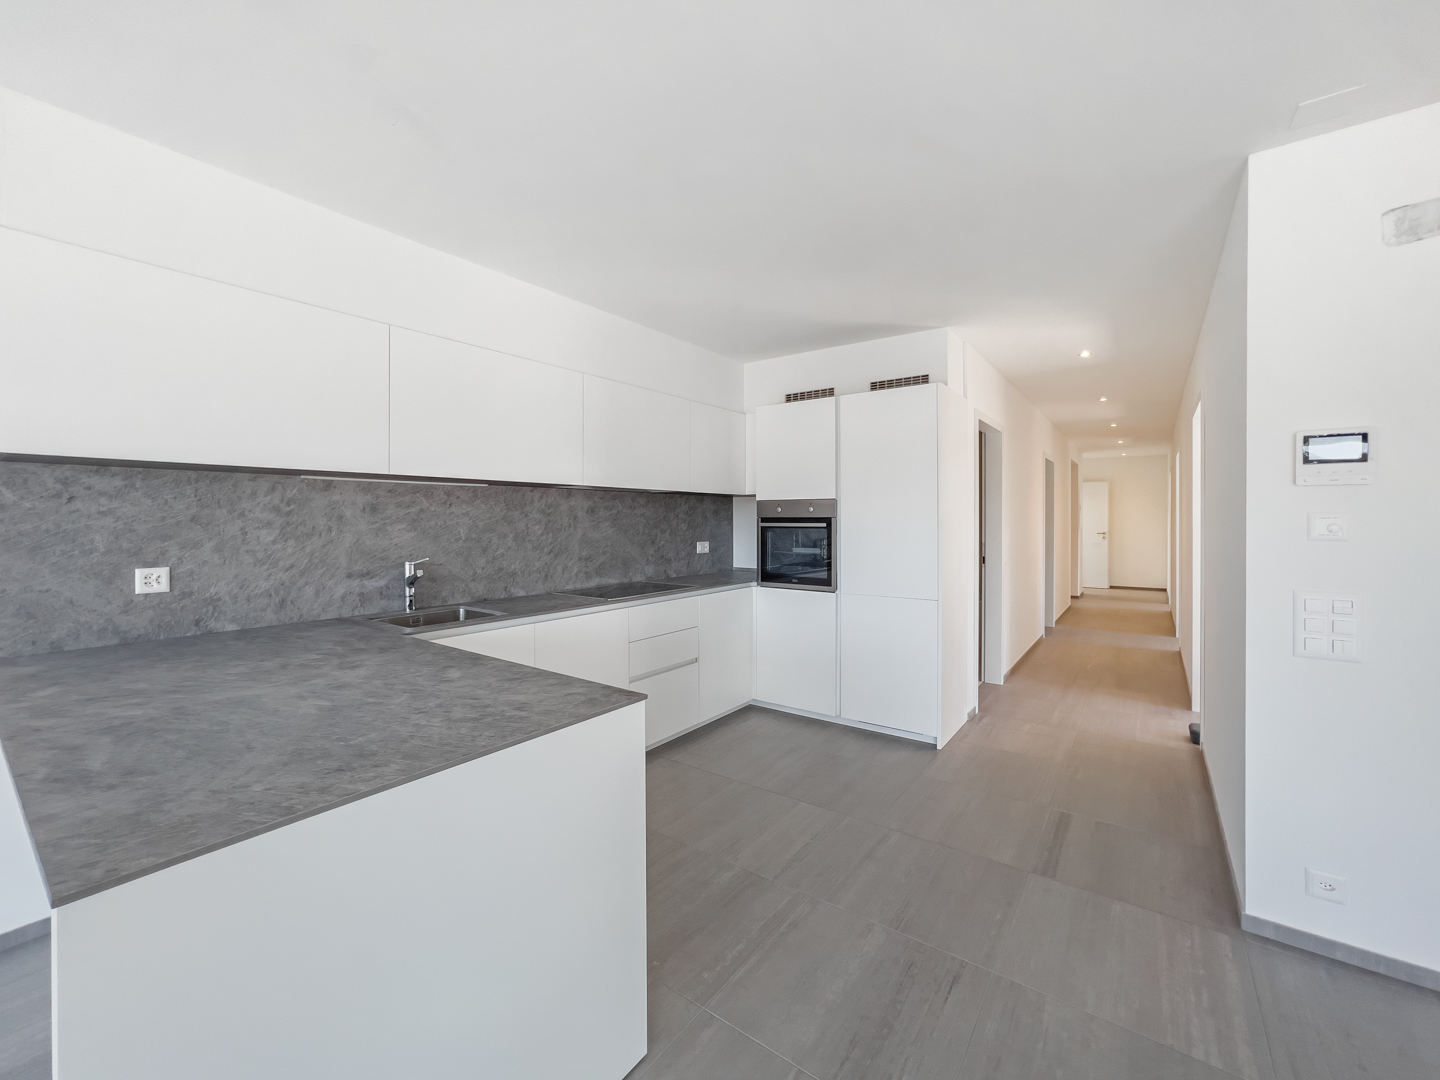 Appartamento all’ultimo piano in vendita a Sorengo in una nuova residenza